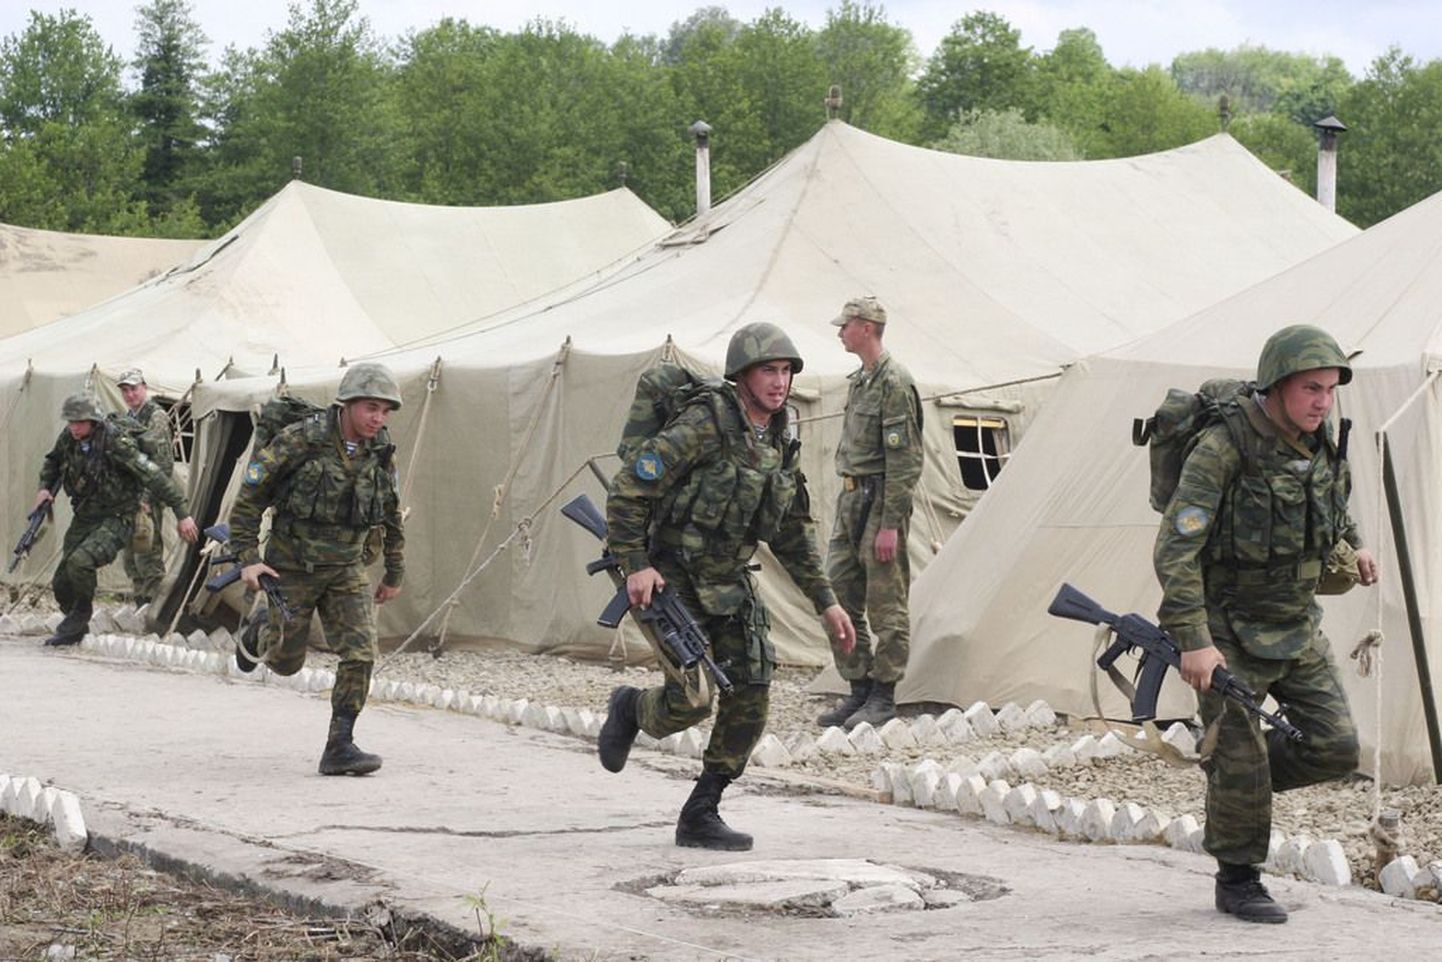 Vene rahuvalvajad Abhaasias toimuval õppusel. Pilt on tehtud 4. mail..